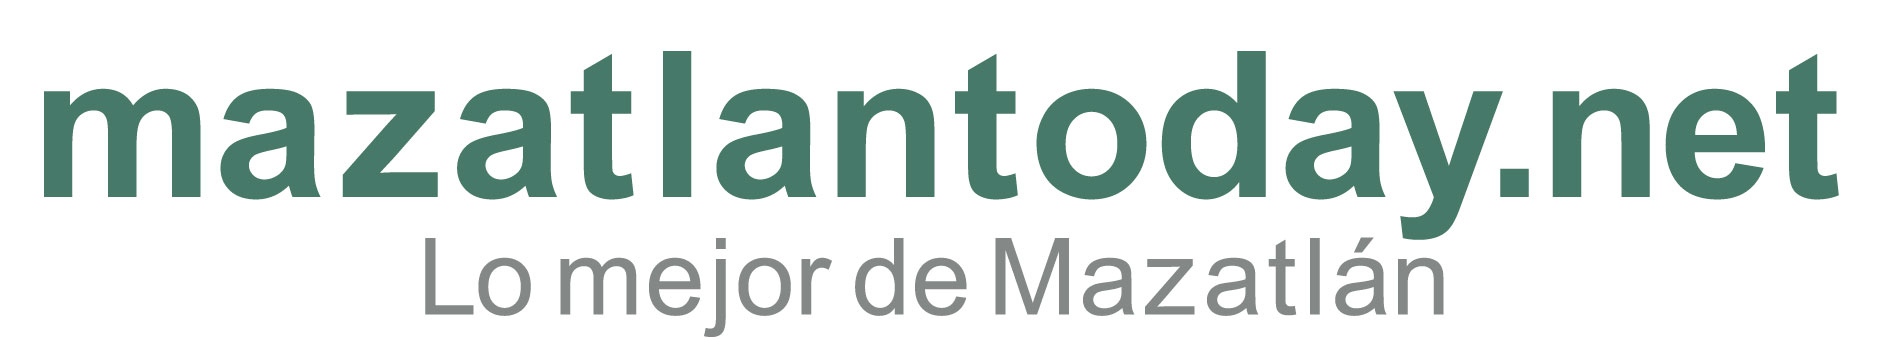 Pedro Infante Museo Guía de consejos y atracciones turísticas | mazatlantoday.net presentación de guía de viaje 2022 | INICIO